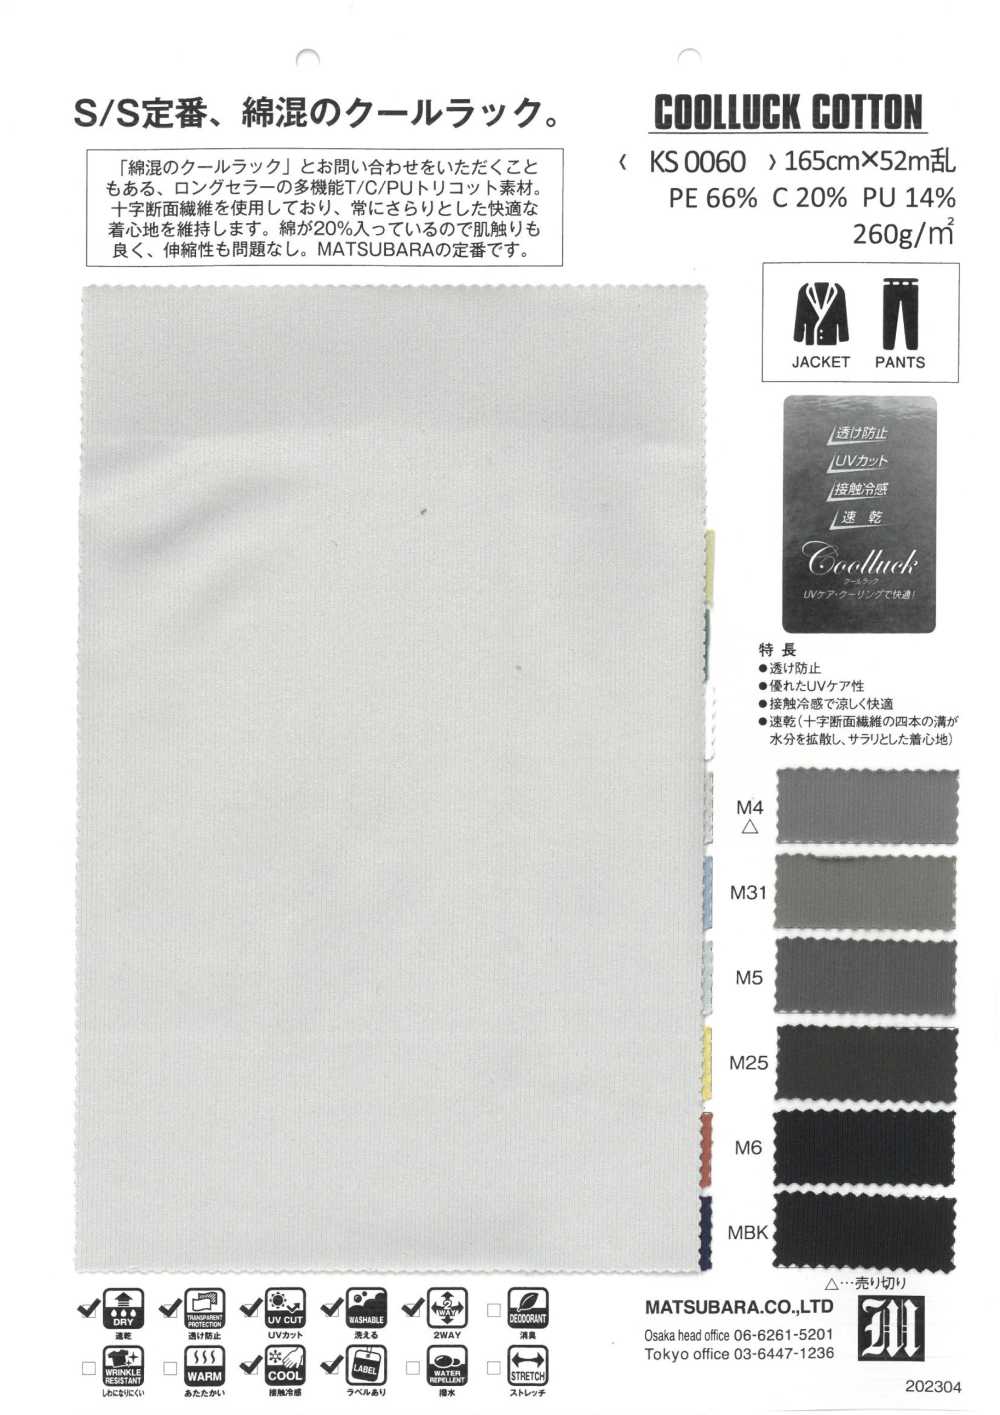 KS0060 COTON COOLLUCK[Fabrication De Textile] Matsubara